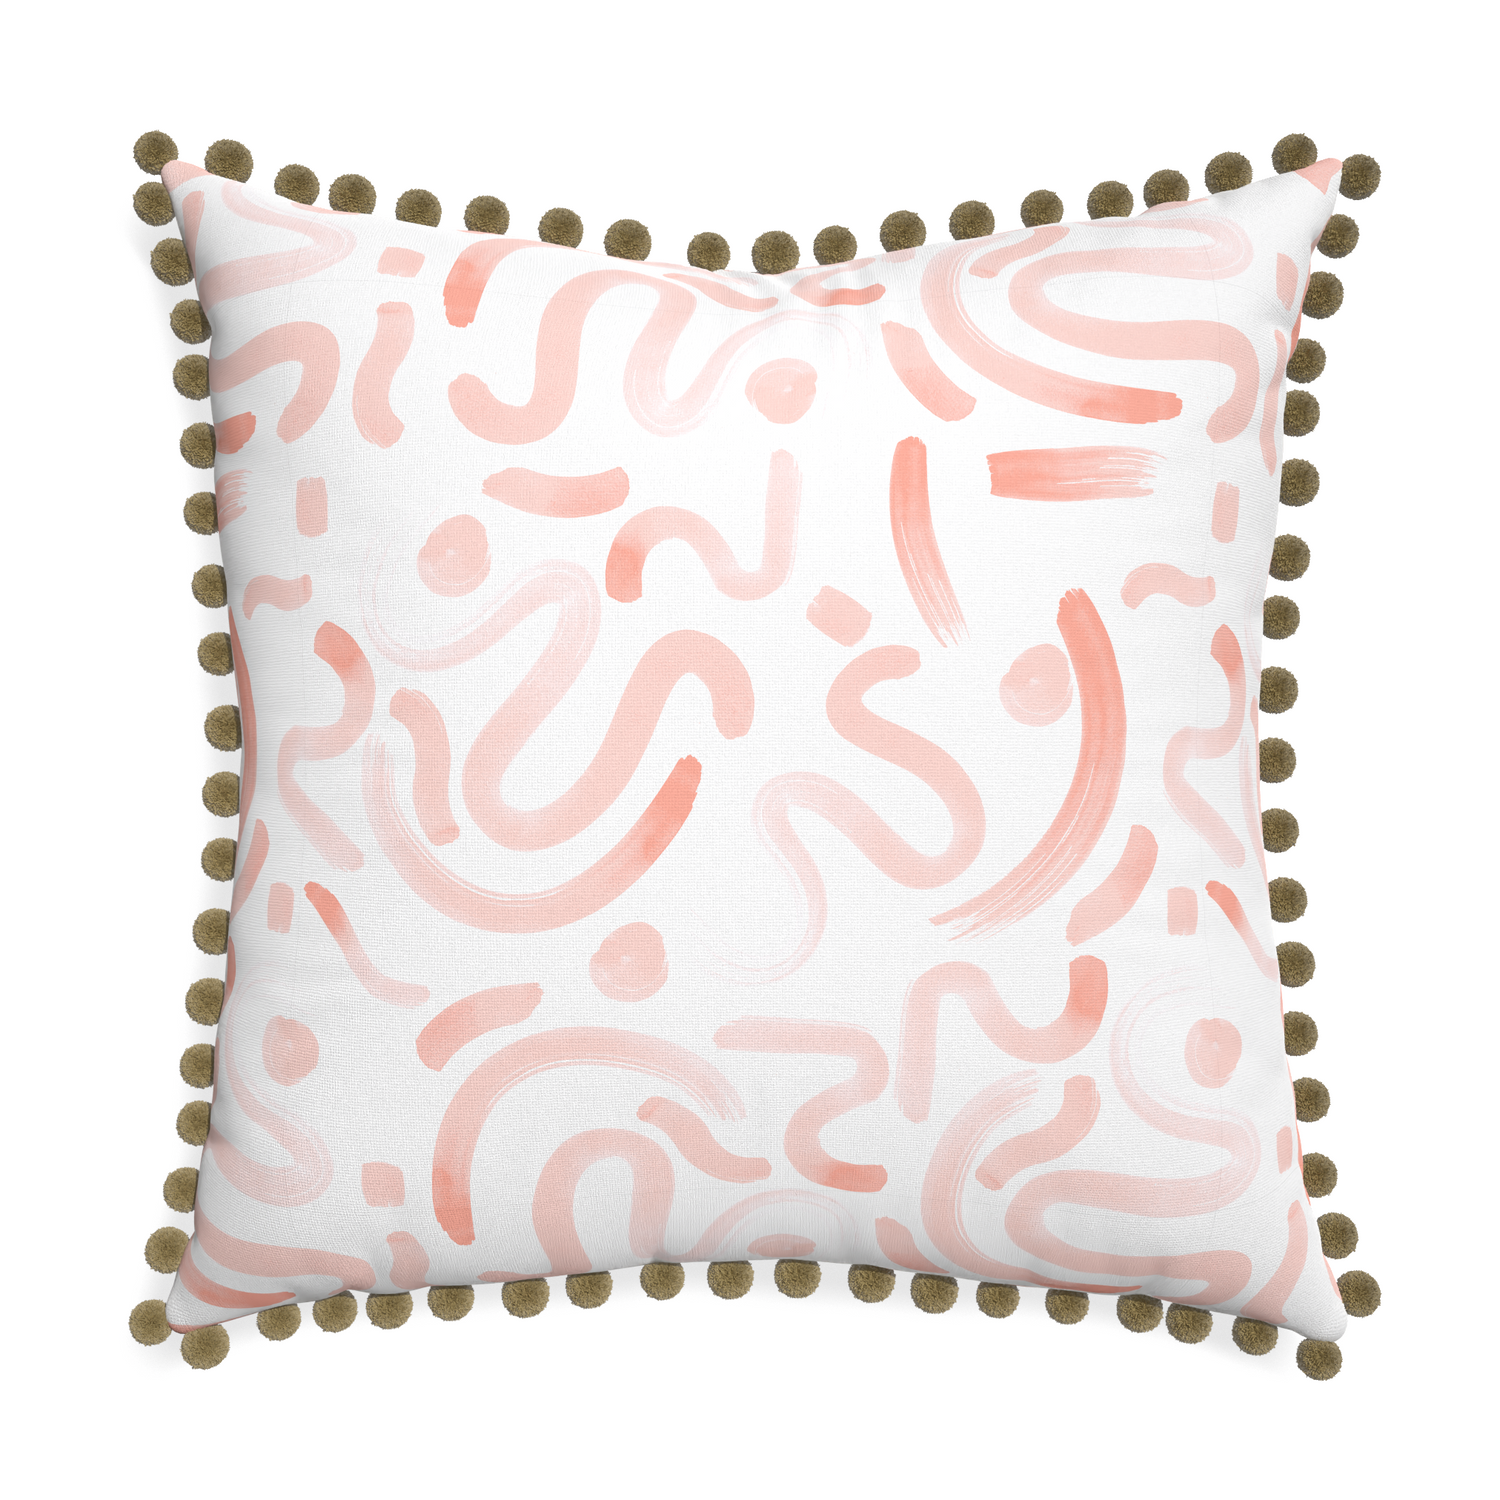 Euro-sham hockney pink custom pillow with olive pom pom on white background